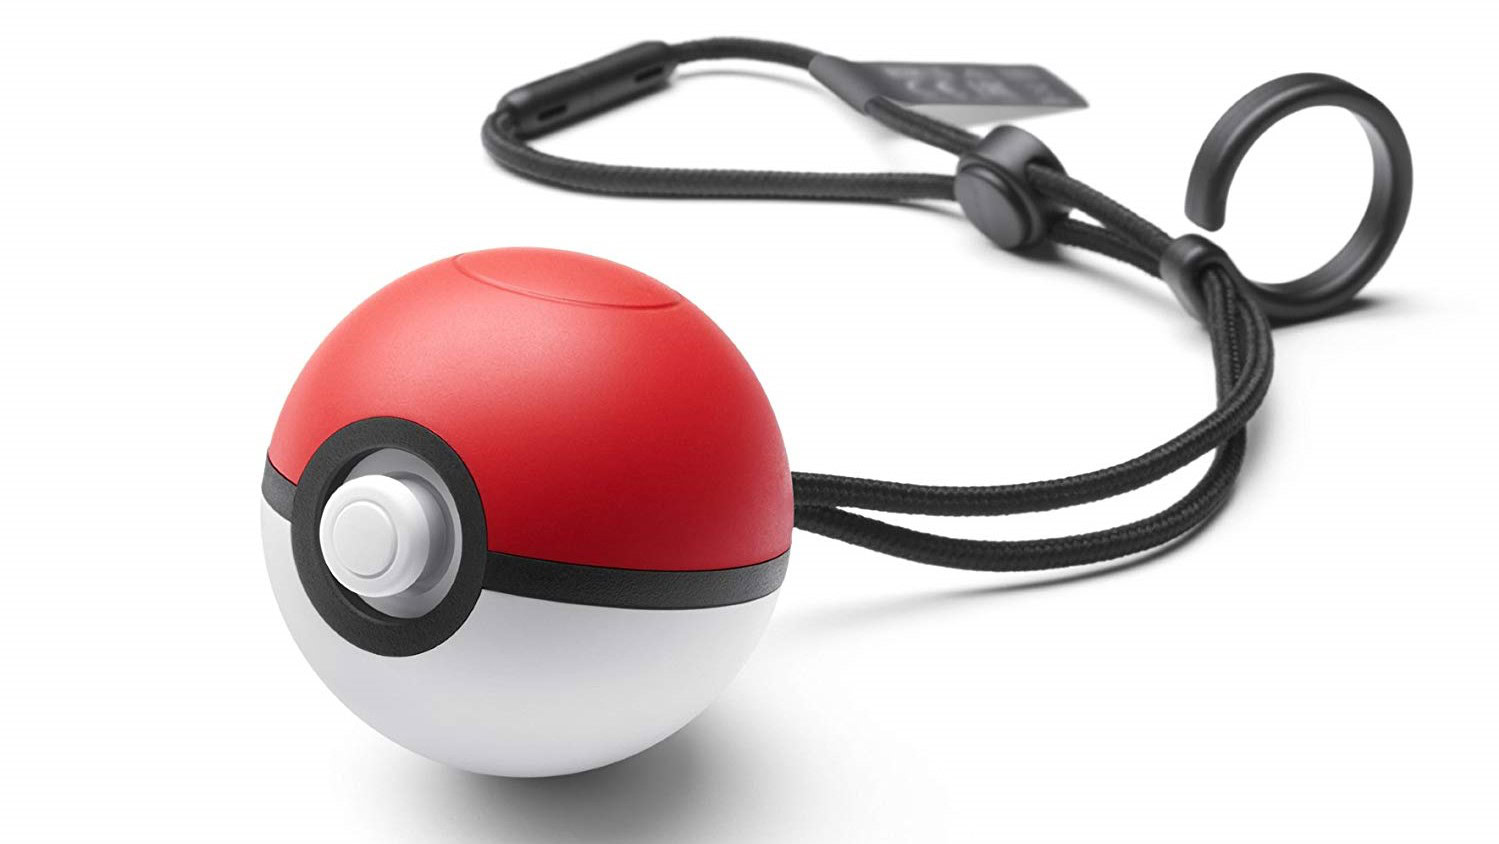 Best Pokemon Go Accessories Go Plus Vs Poke Ball Plus Vs Go Tcha